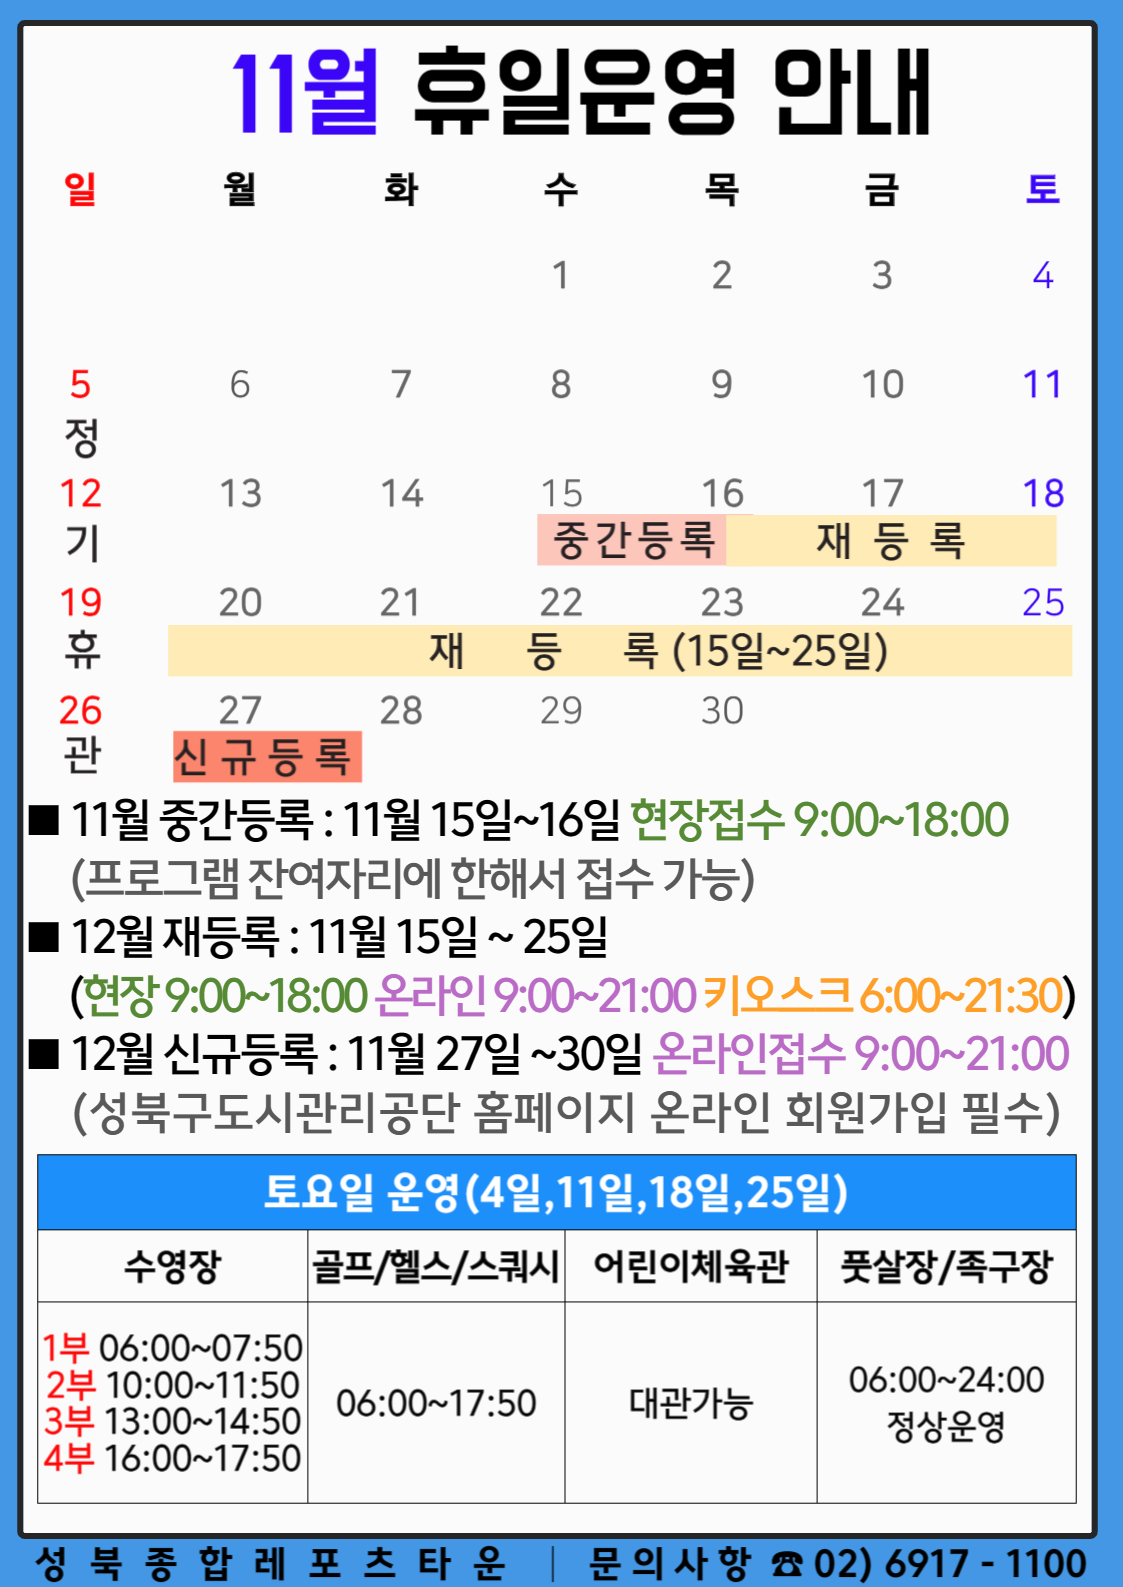 성북종합레포츠타운 11월 휴일운영 안내 데이터 제공